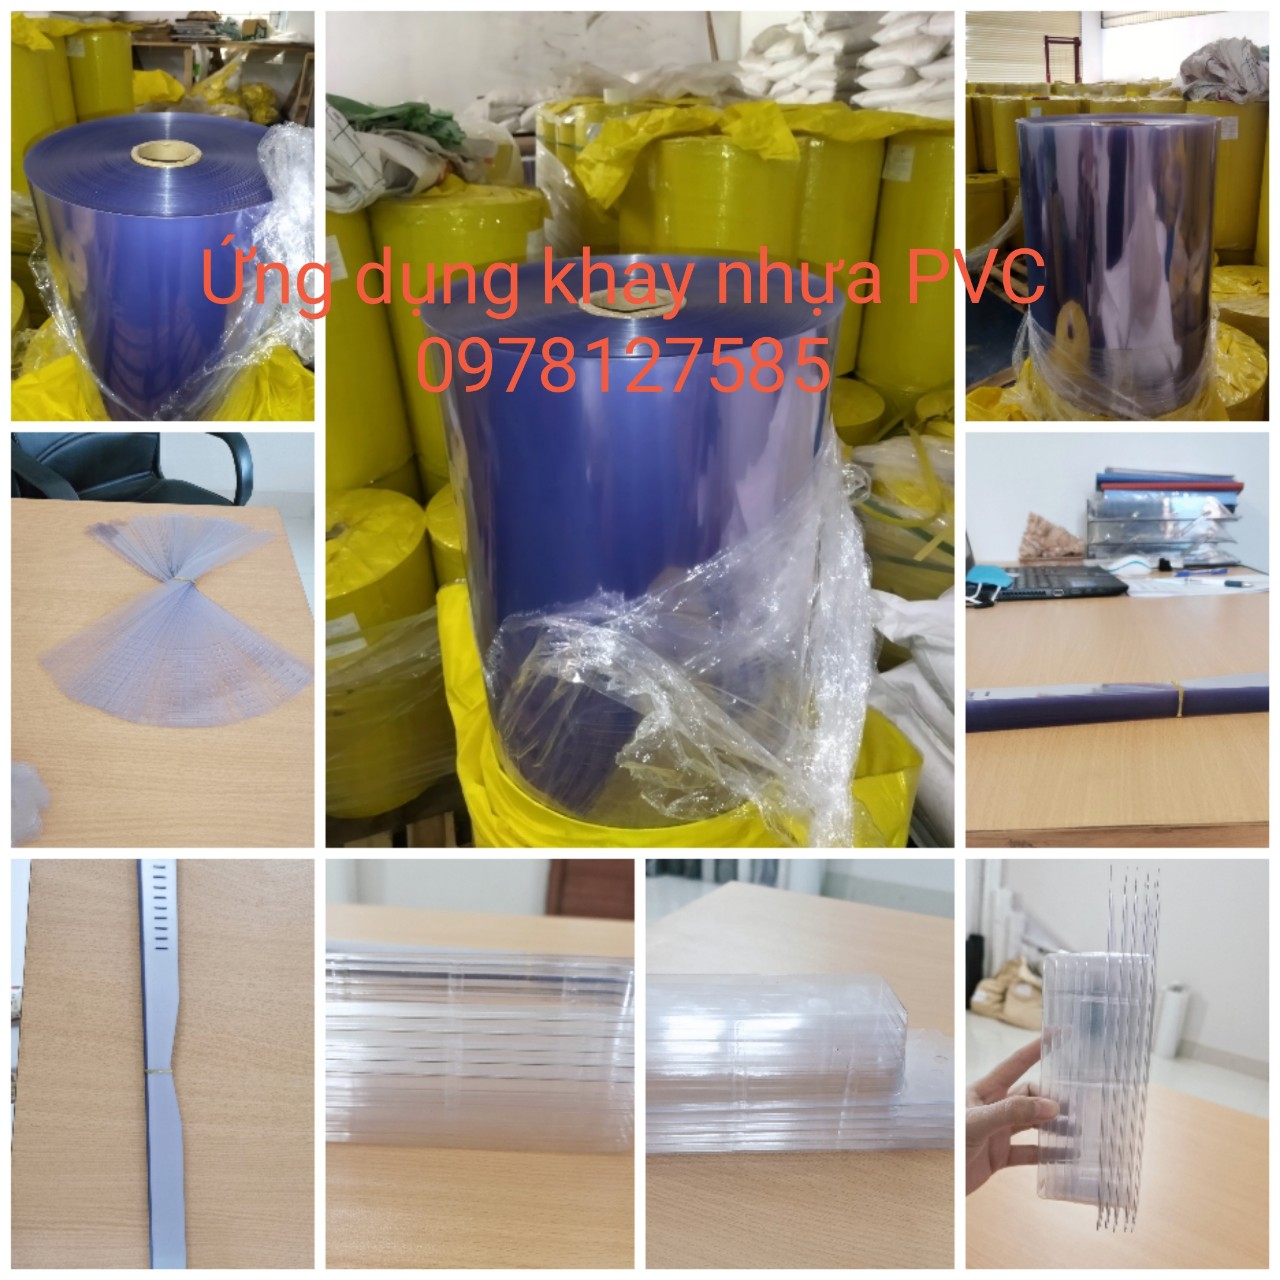 Khay nhựa PVC - Màng Nhựa PVC Cứng Định Hình - Công Ty TNHH Công Nghiệp Doanh Phong